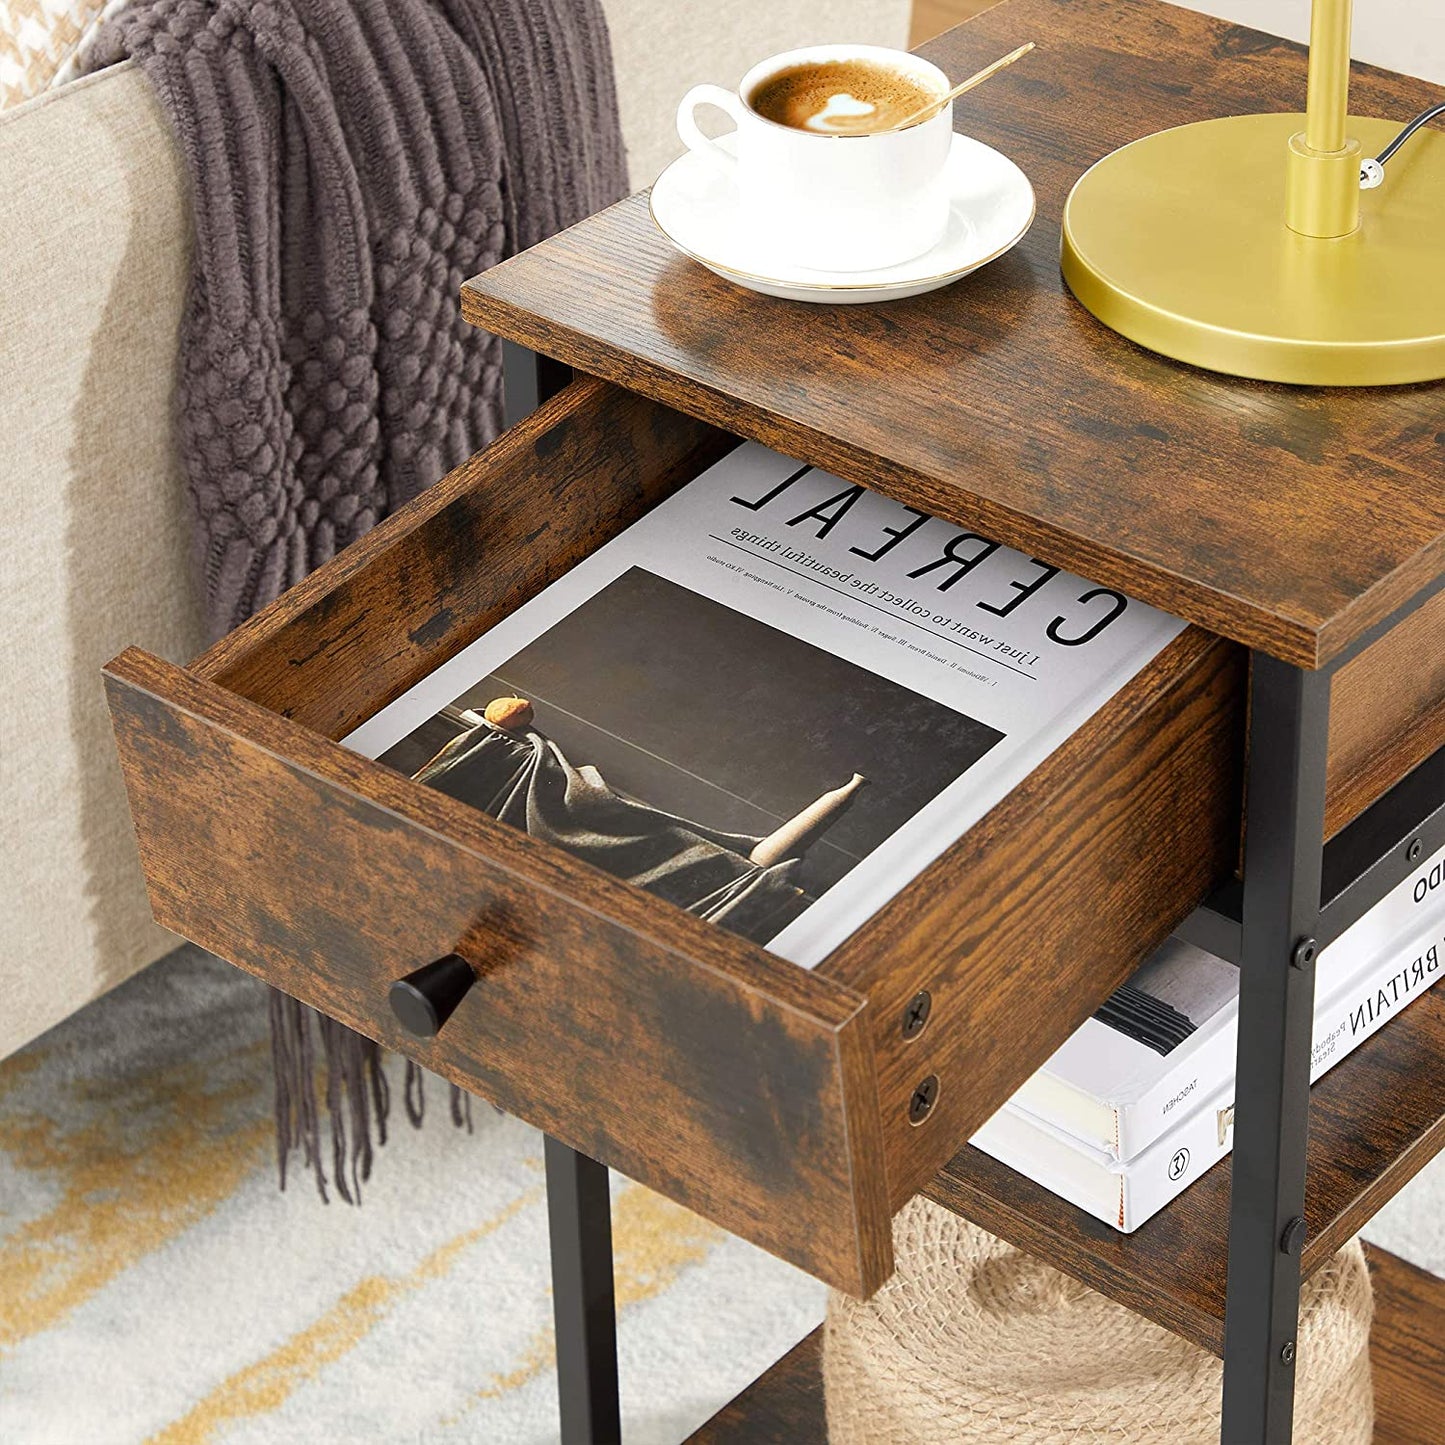 Nancy's Meridian Bedside Table - Side Table - Drawer - 2 Shelves - 35 x 35 x 70 cm - Engineered Wood - Metal - Industrial - Brown - Black